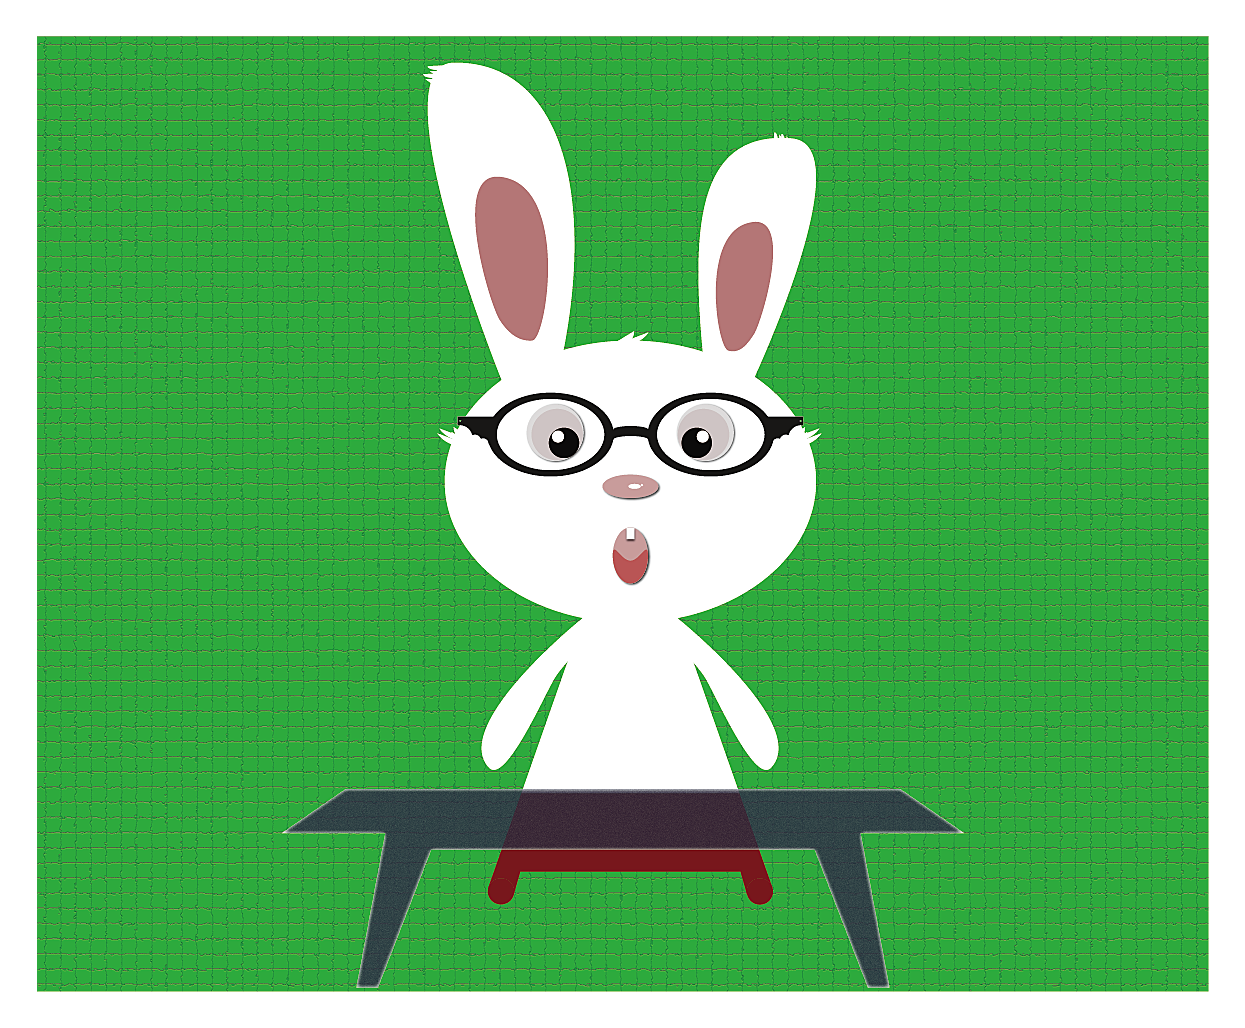 兔包——青岛佳青禾食品有限公司官方网站